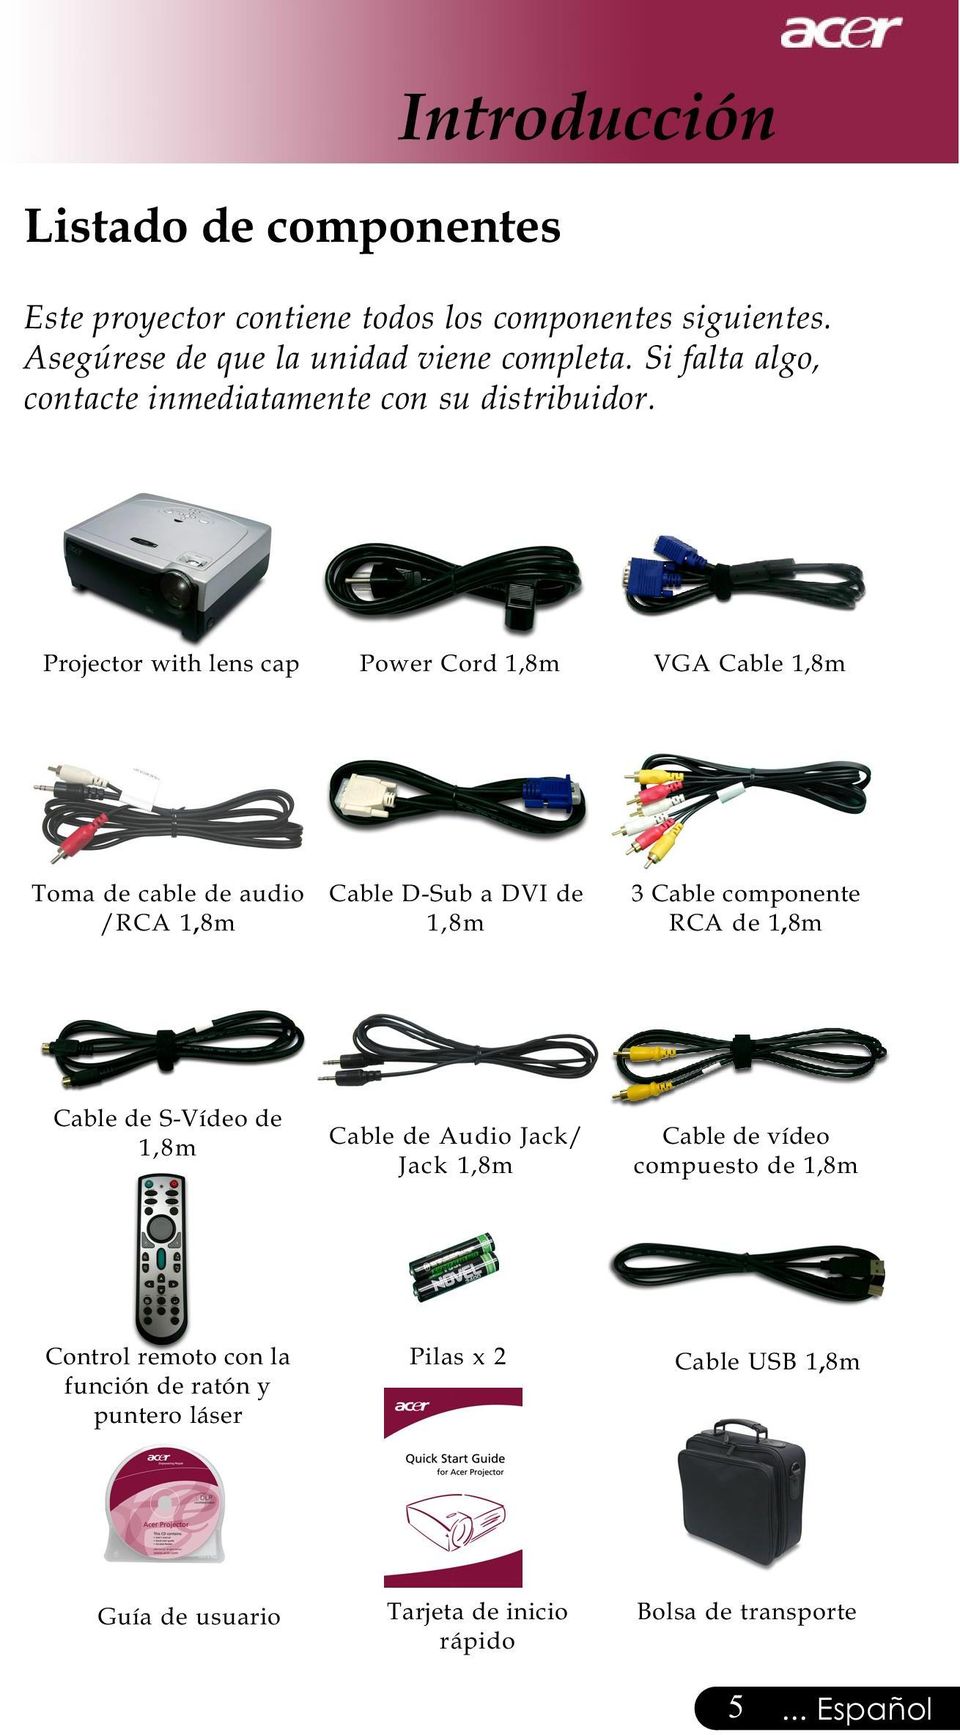 Projector with lens cap Power Cord 1,8m VGA Cable 1,8m Toma de cable de audio /RCA 1,8m Cable D-Sub a DVI de 1,8m 3 Cable componente RCA de 1,8m